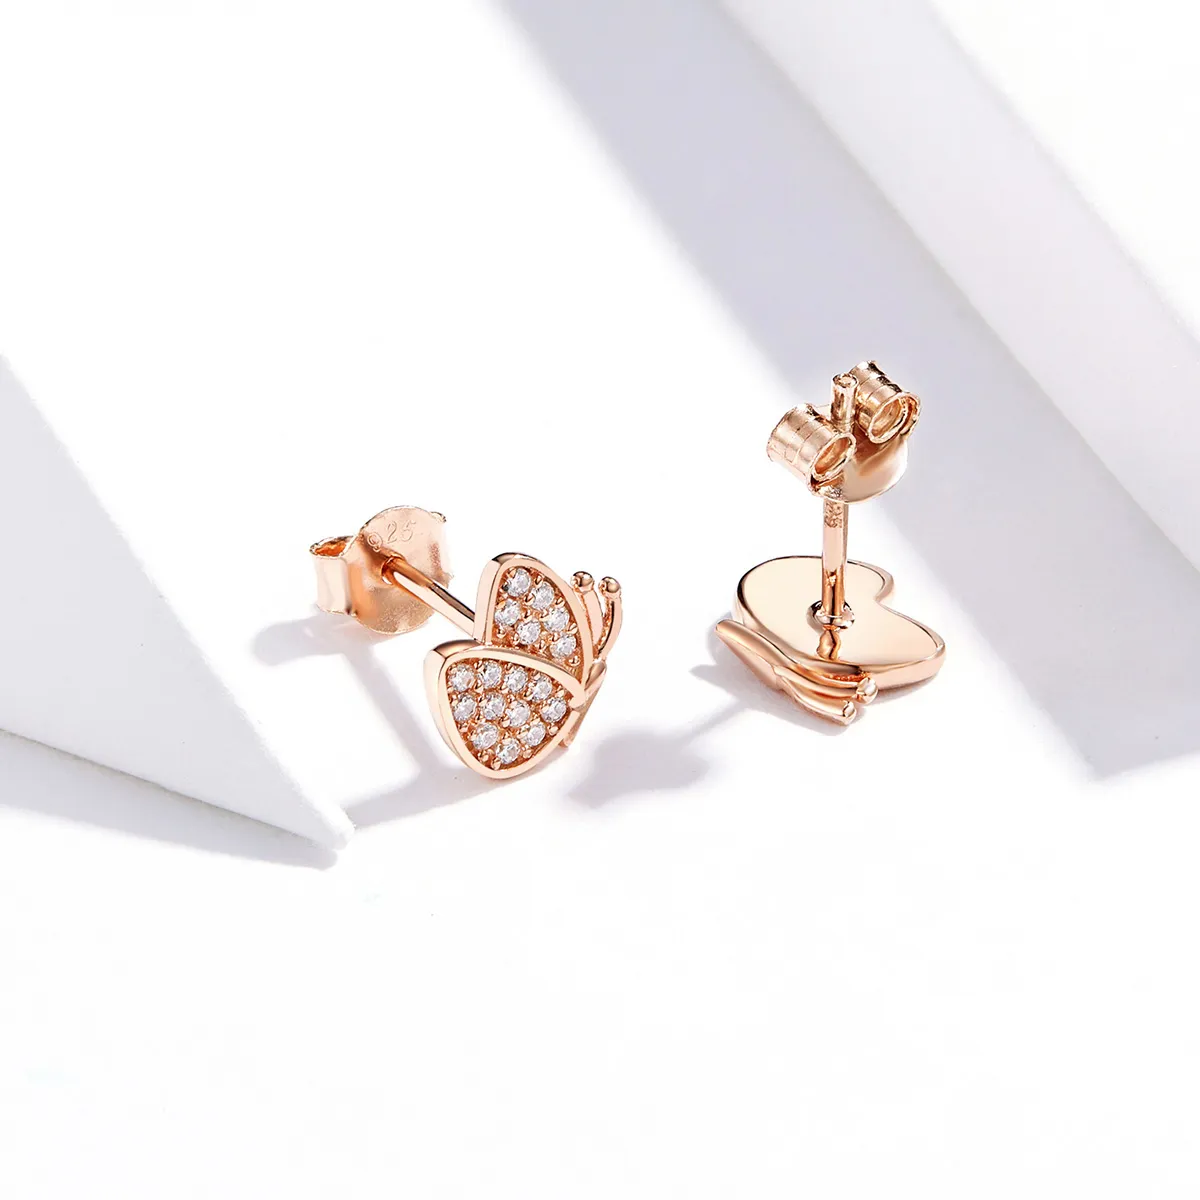 Pandora Style Rose Gold Butterfly Stud Earrings - SCE776